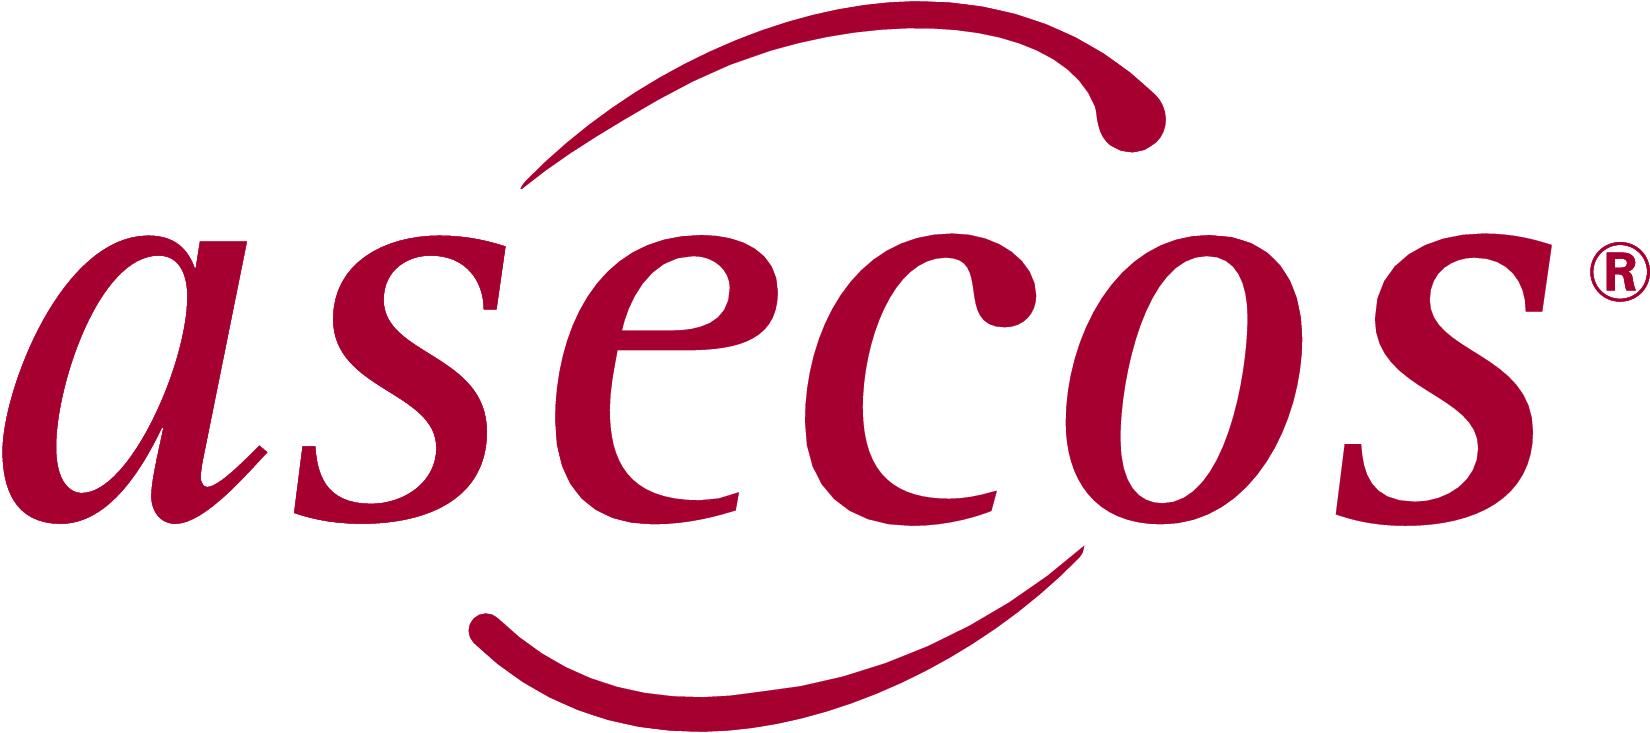 Logo Asecos